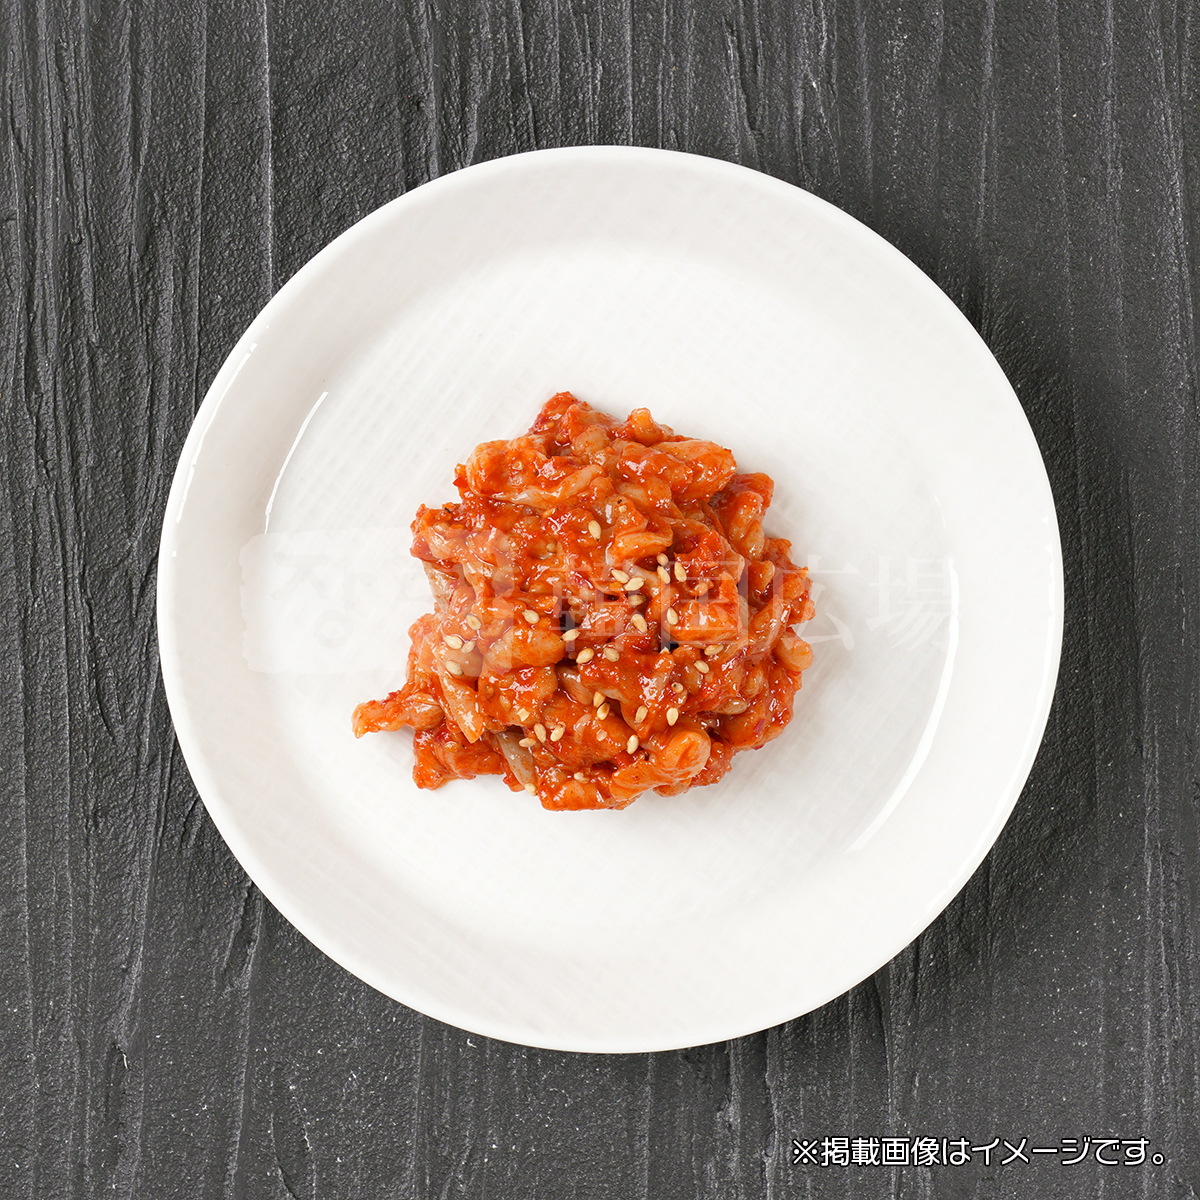  channja salt .100g / Korea food Korea cooking 